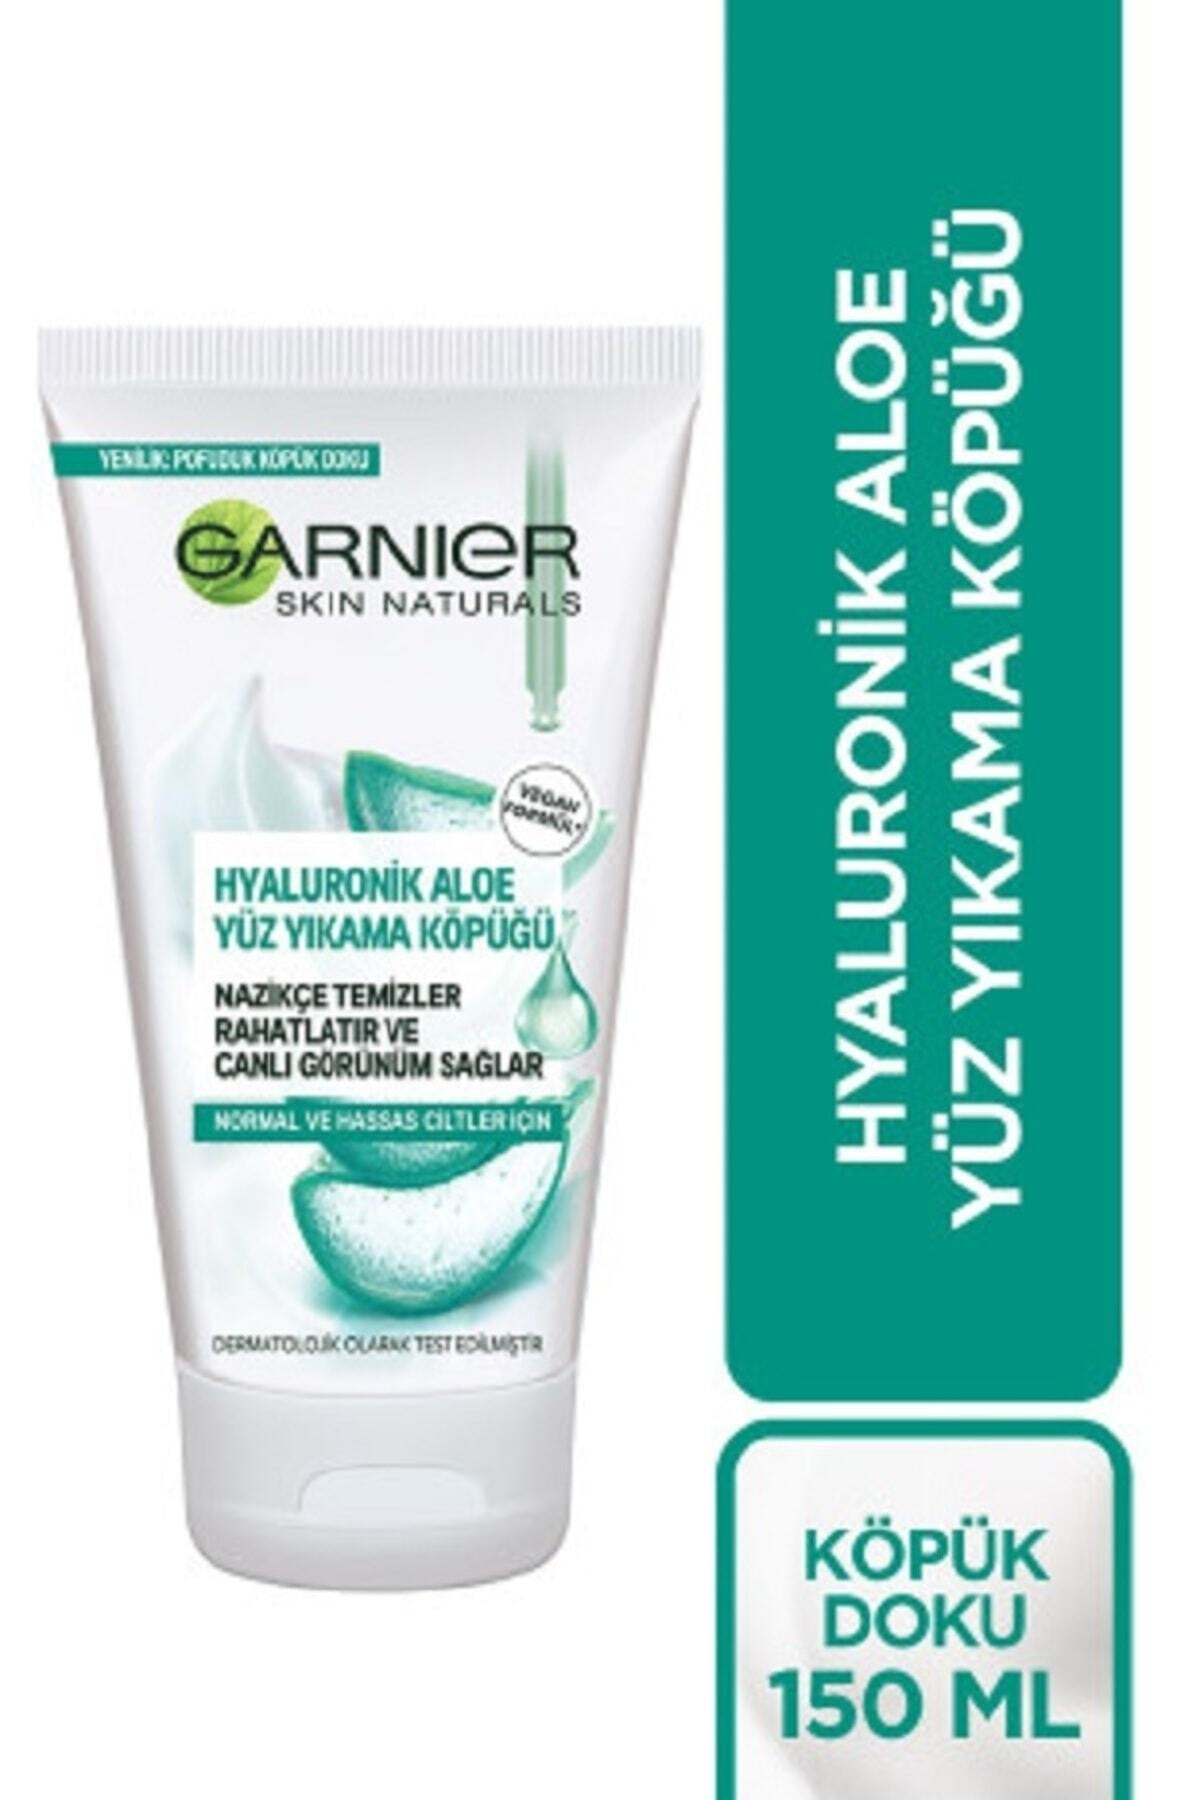 Garnier Süper Hyaluronik Aloe Yüz Yıkama Ve Canlandırma Köpüğü 150_ml.,